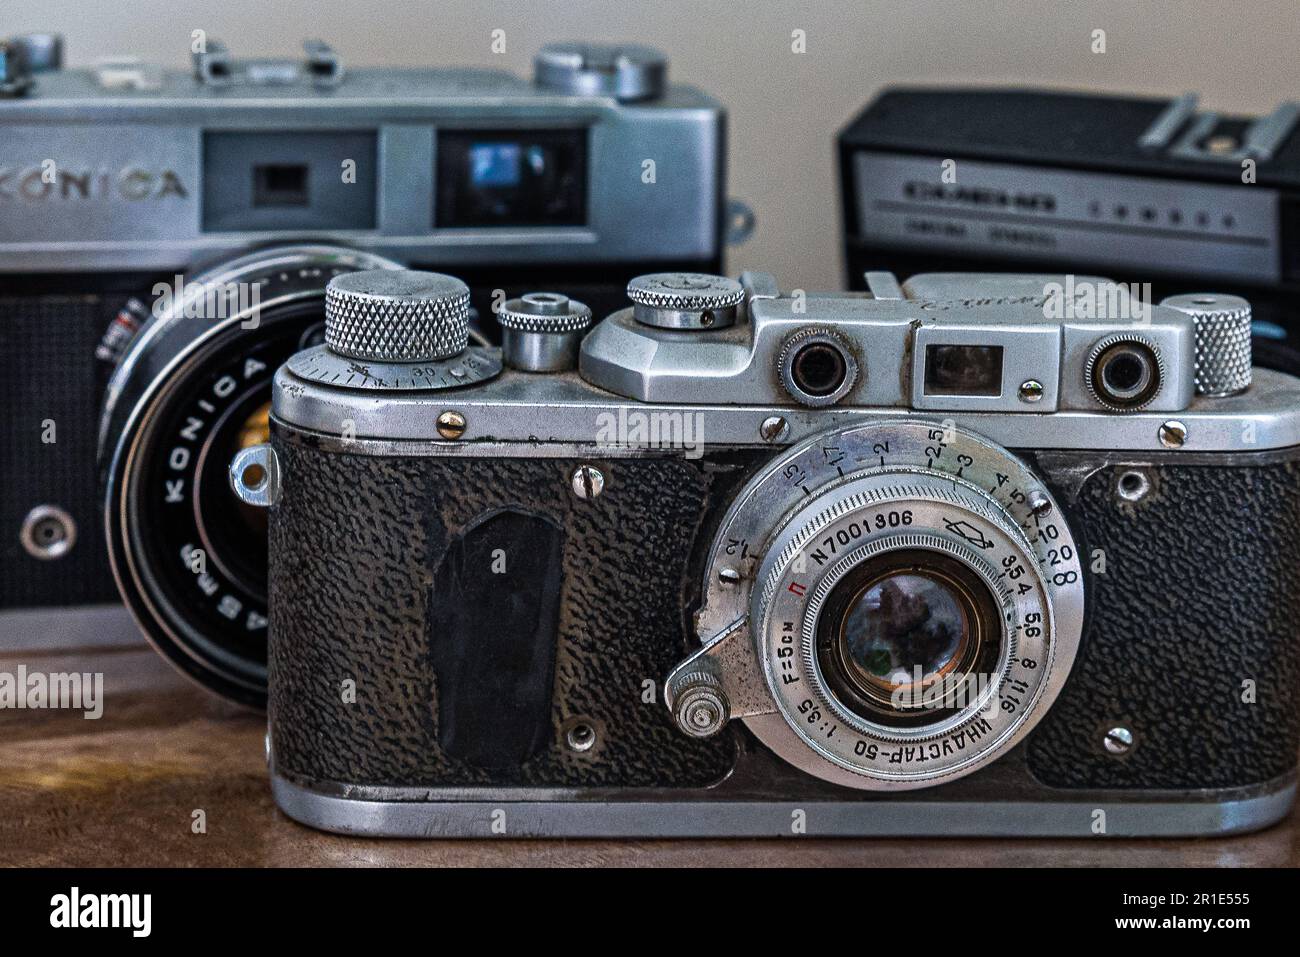 Zorka camera - una macchina fotografica soviet che è una copia della macchina fotografica Leica. Vecchie fotocamere dell'epoca dei 35mm film Rolls.A collezione di reflex classiche. Foto Stock